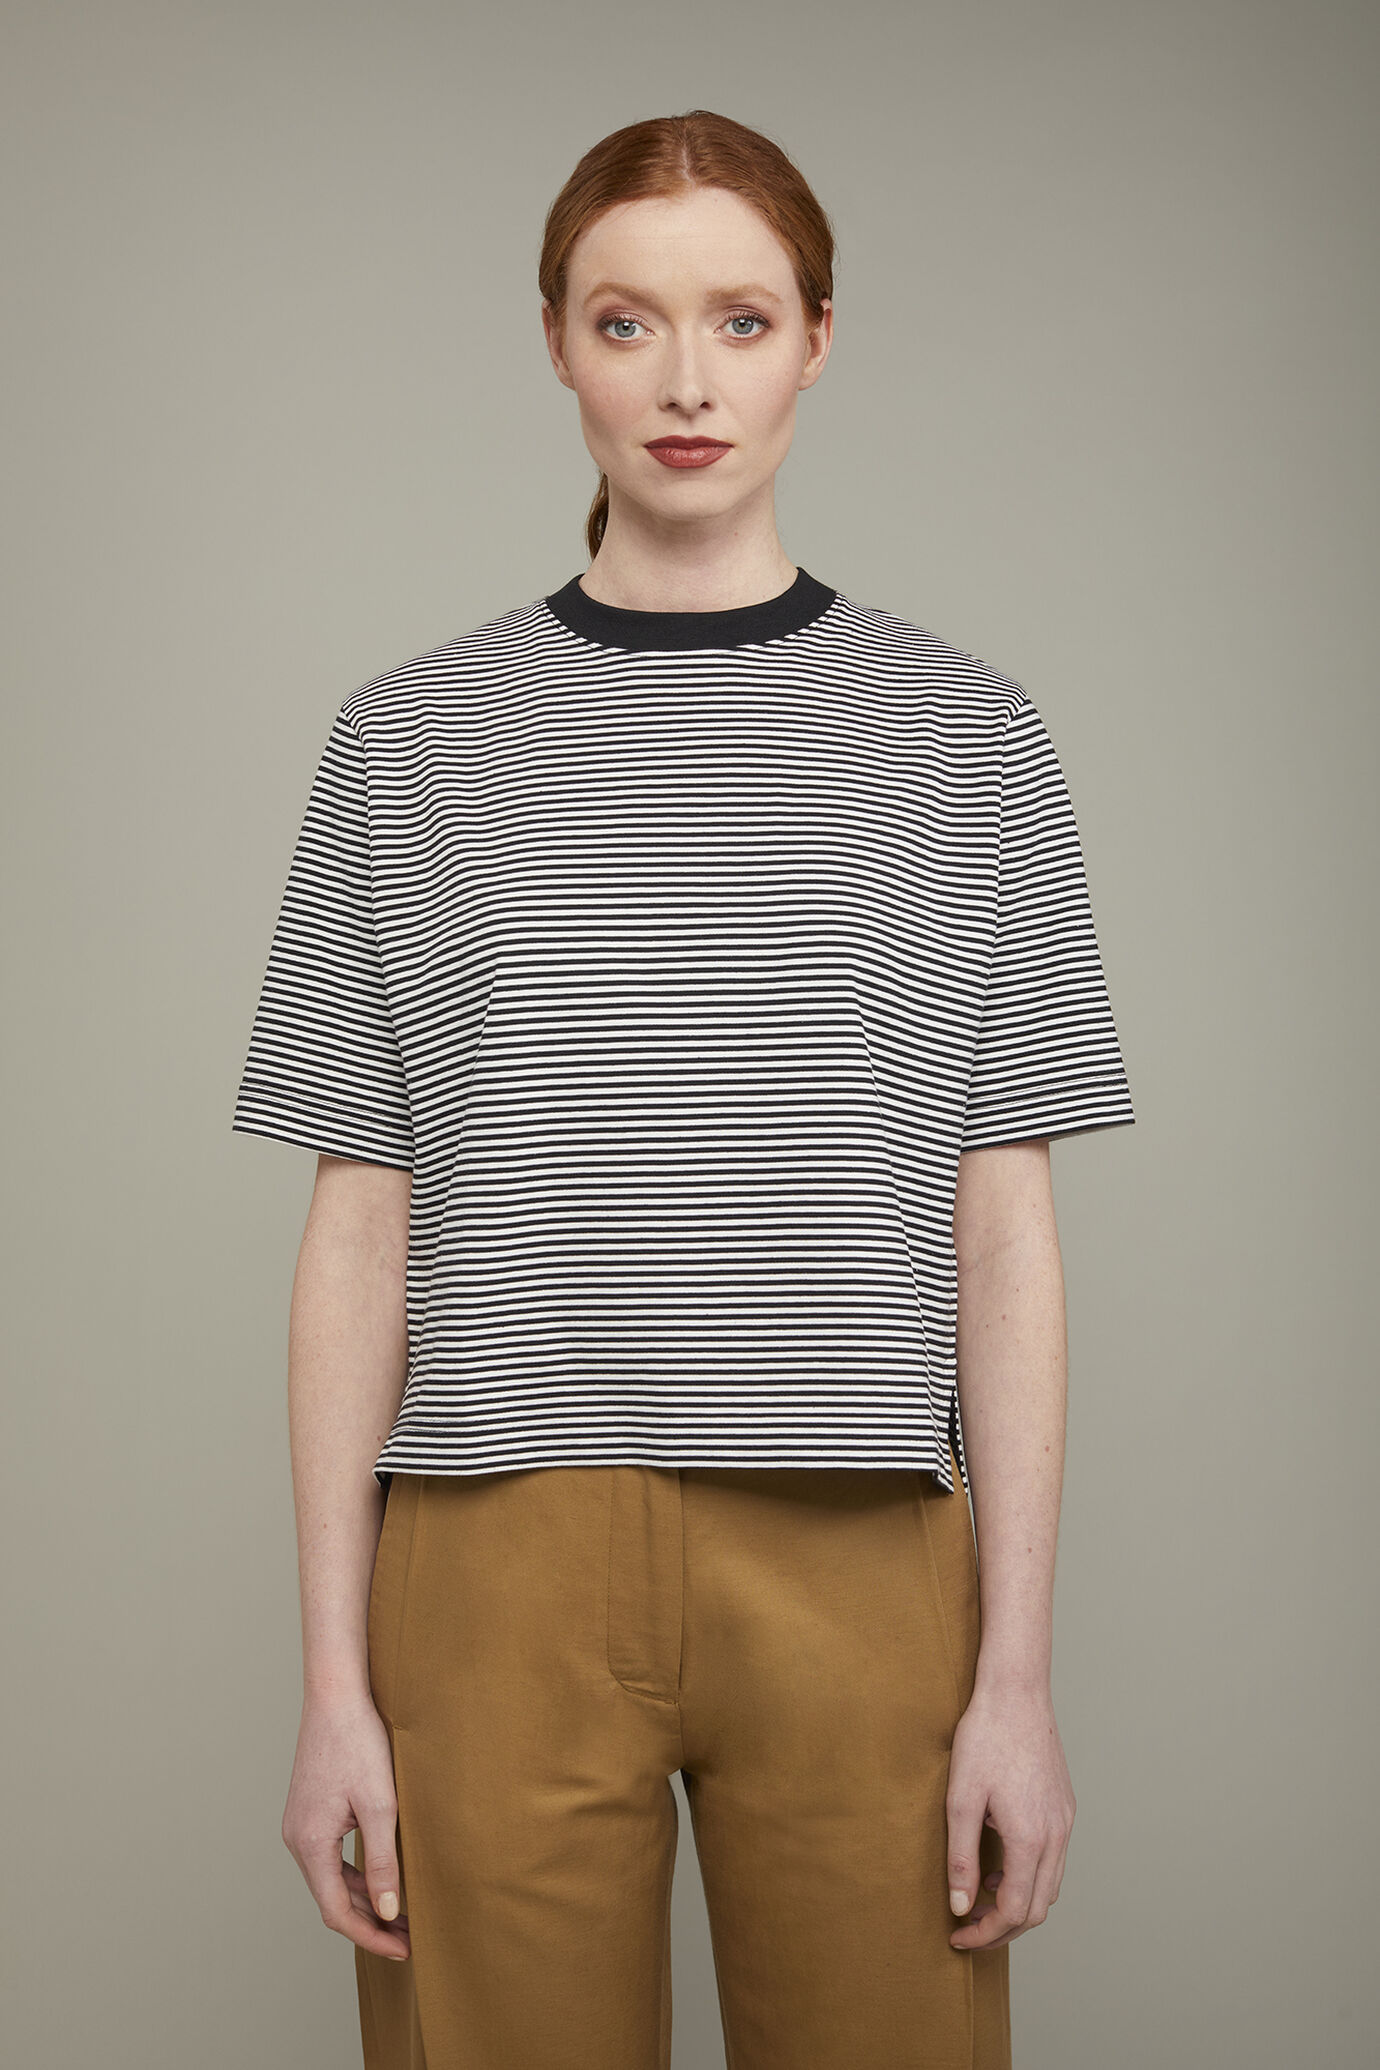 Damen-T-Shirt aus 100 % Baumwolljersey in normaler Passform